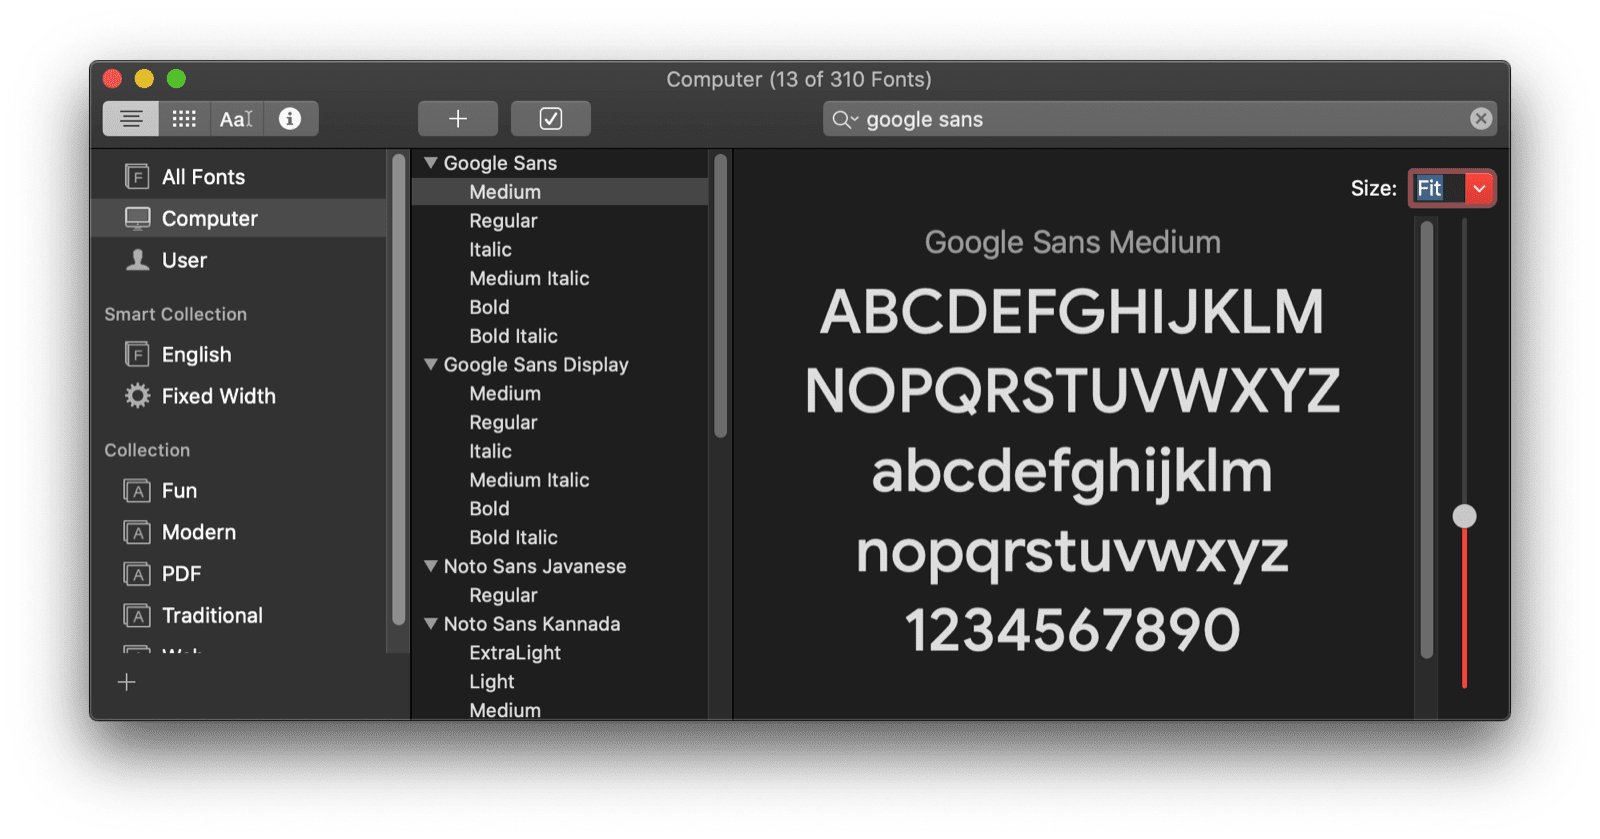 تطبيق macOS Font Book يعرض معاينة للخط Google Sans